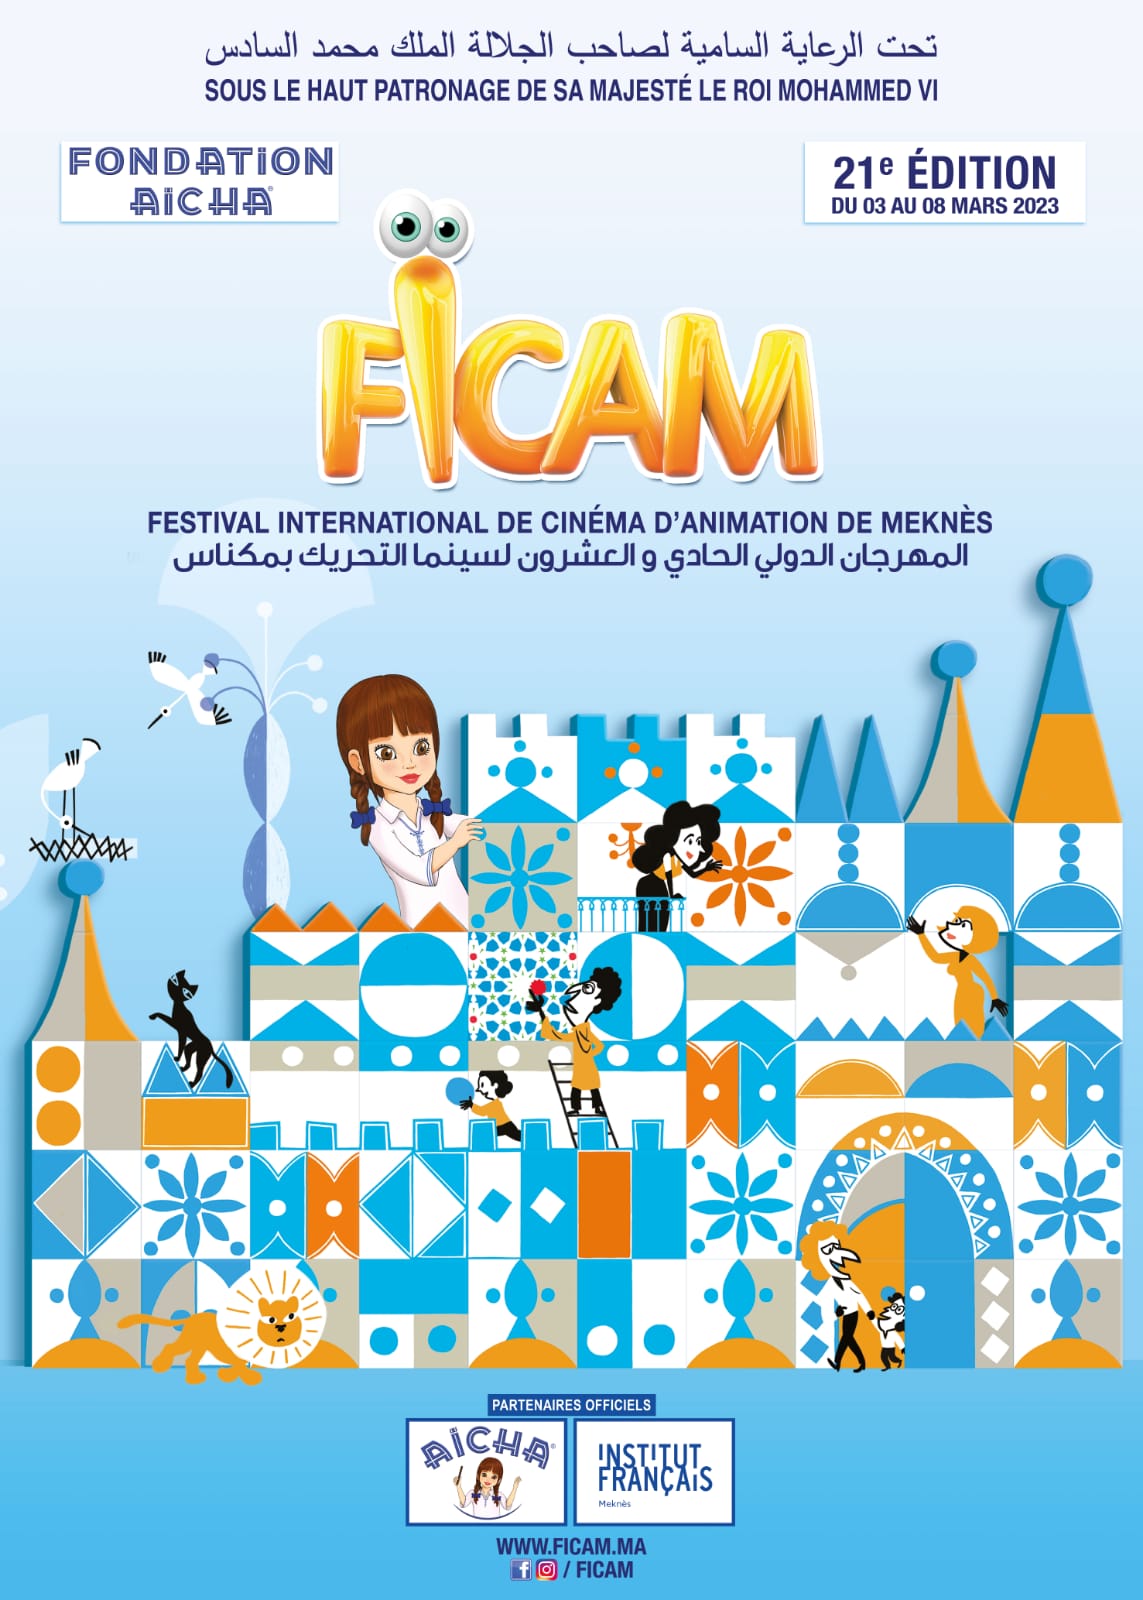 FICAM® : Véritable pilier de développement de l’animation au Maroc et en Afrique